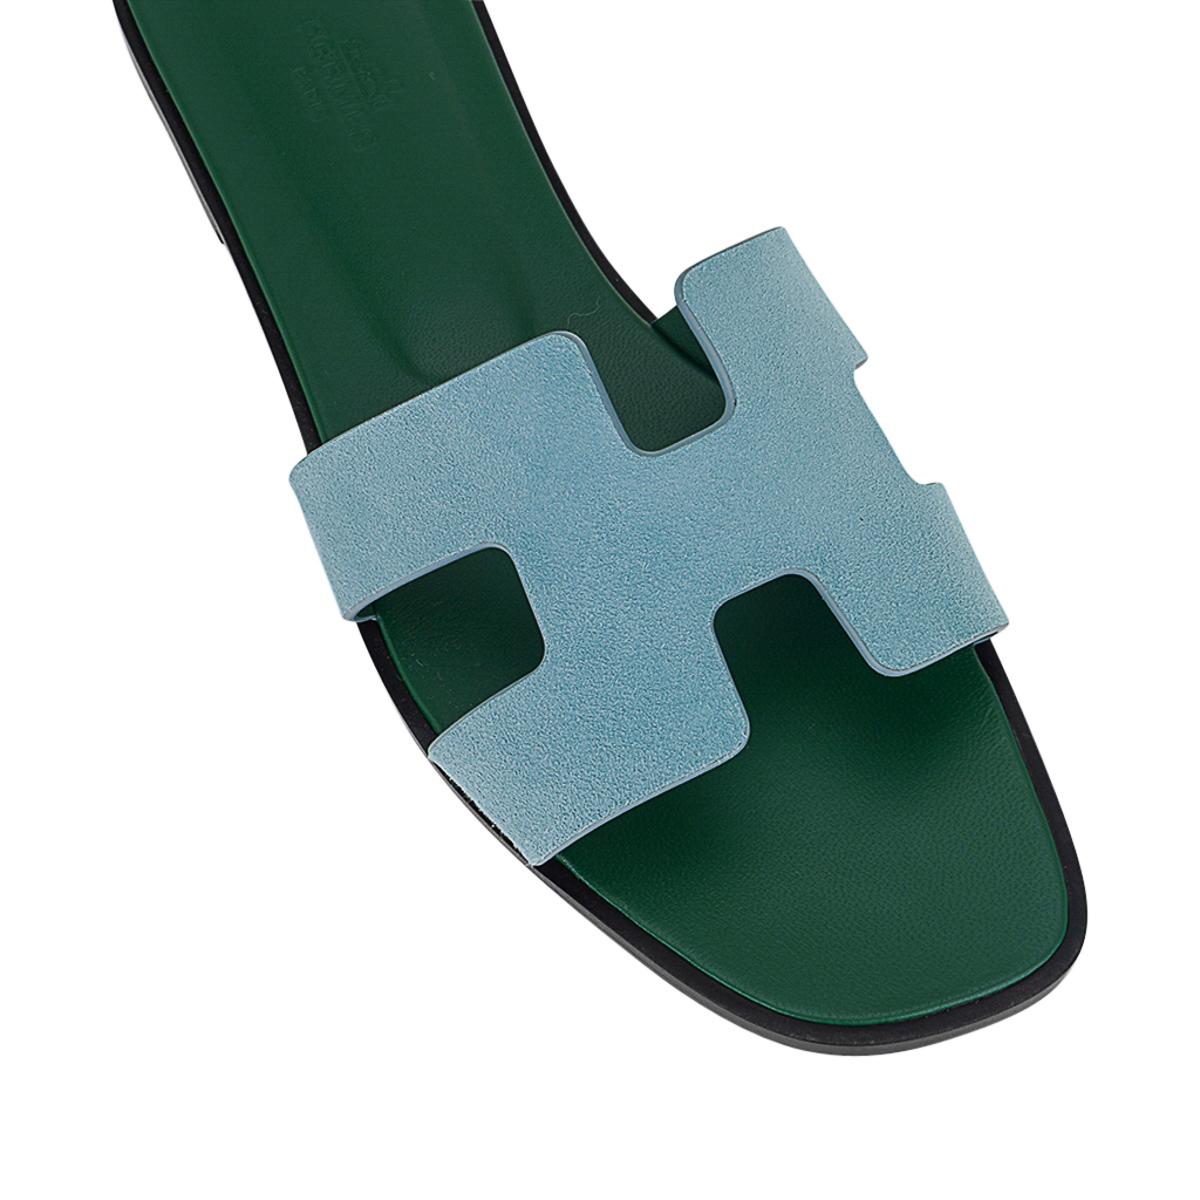 Mightychic propose une paire de sandales Hermès Oran présentées en Vert d'Eau Doblis.
L'emblématique top H découpé sur le dessus du pied en sublime Vert d'Eau Doblis (Suede).
Semelle intérieure en cuir de veau gaufré Vert Anglais.
Talon en bois et